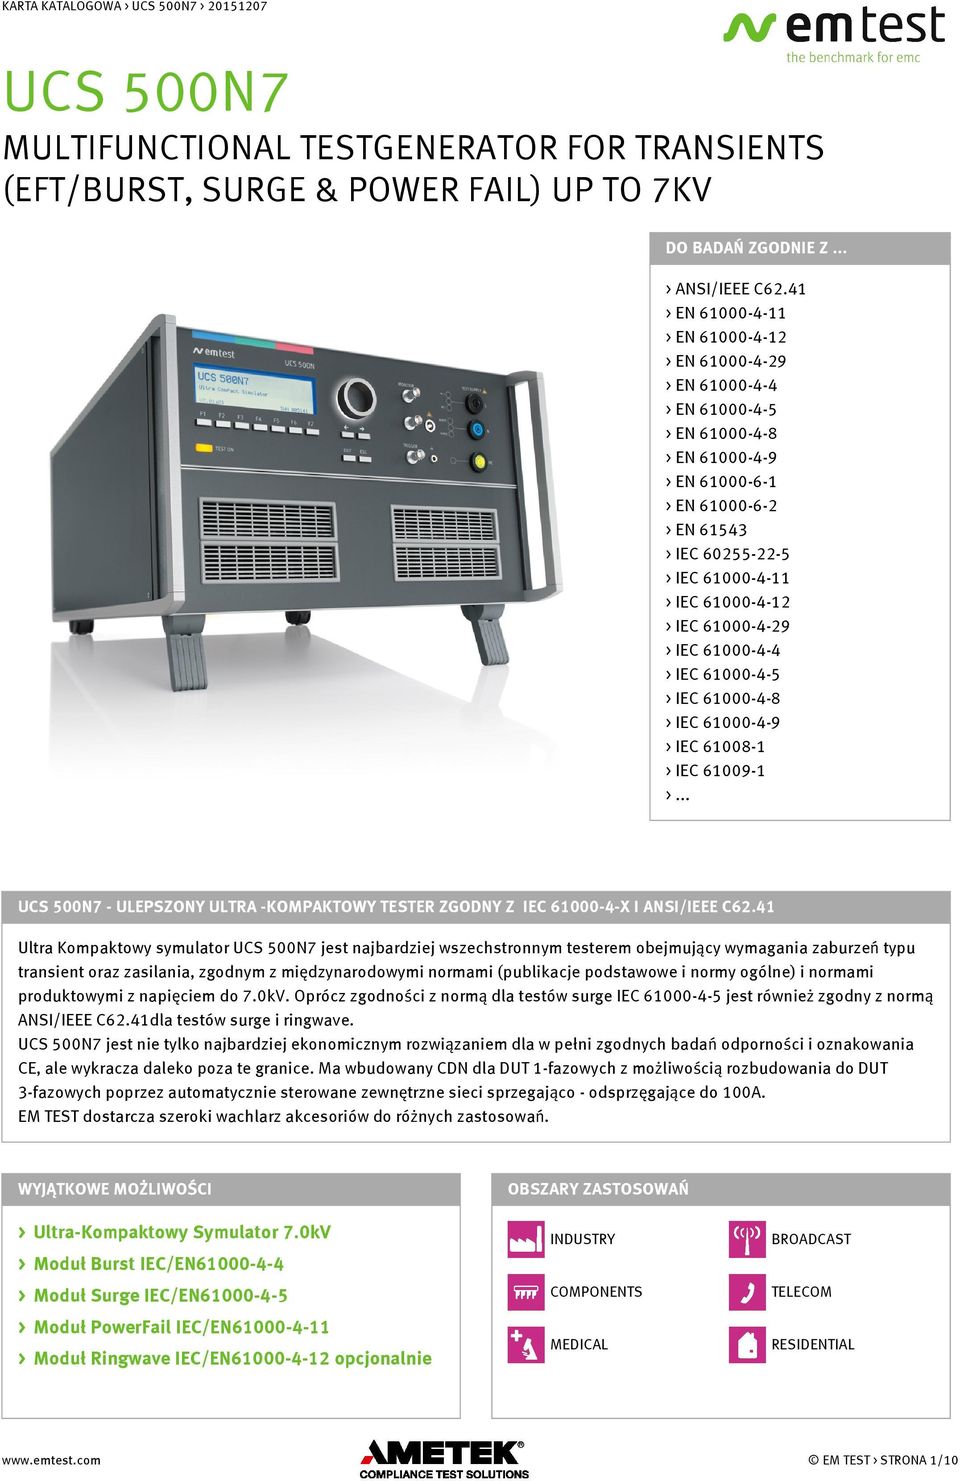 61000-4-12 > IEC 61000-4-29 > IEC 61000-4-4 > IEC 61000-4-5 > IEC 61000-4-8 > IEC 61000-4-9 > IEC 61008-1 > IEC 61009-1 >.